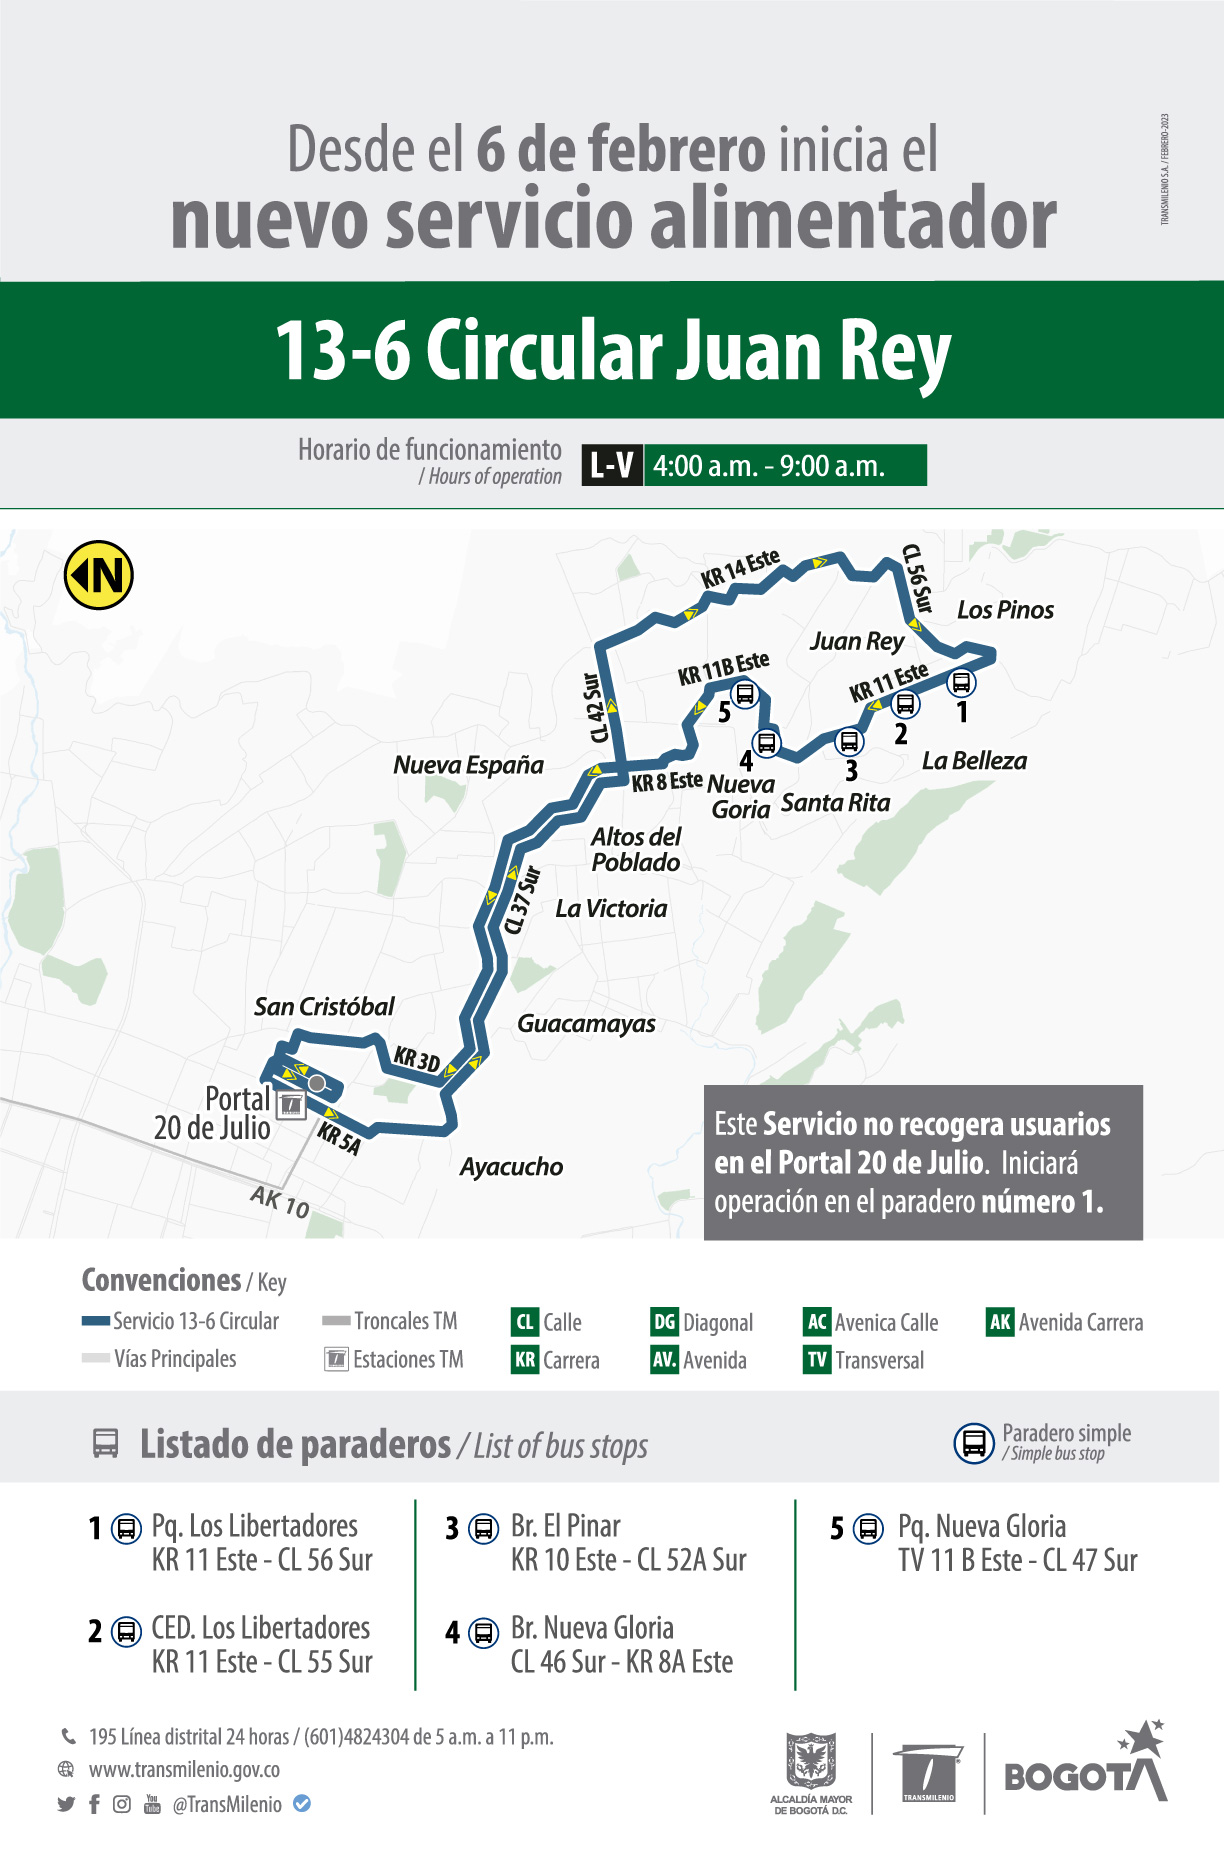 Nueva ruta alimentadora Circular Juan Rey